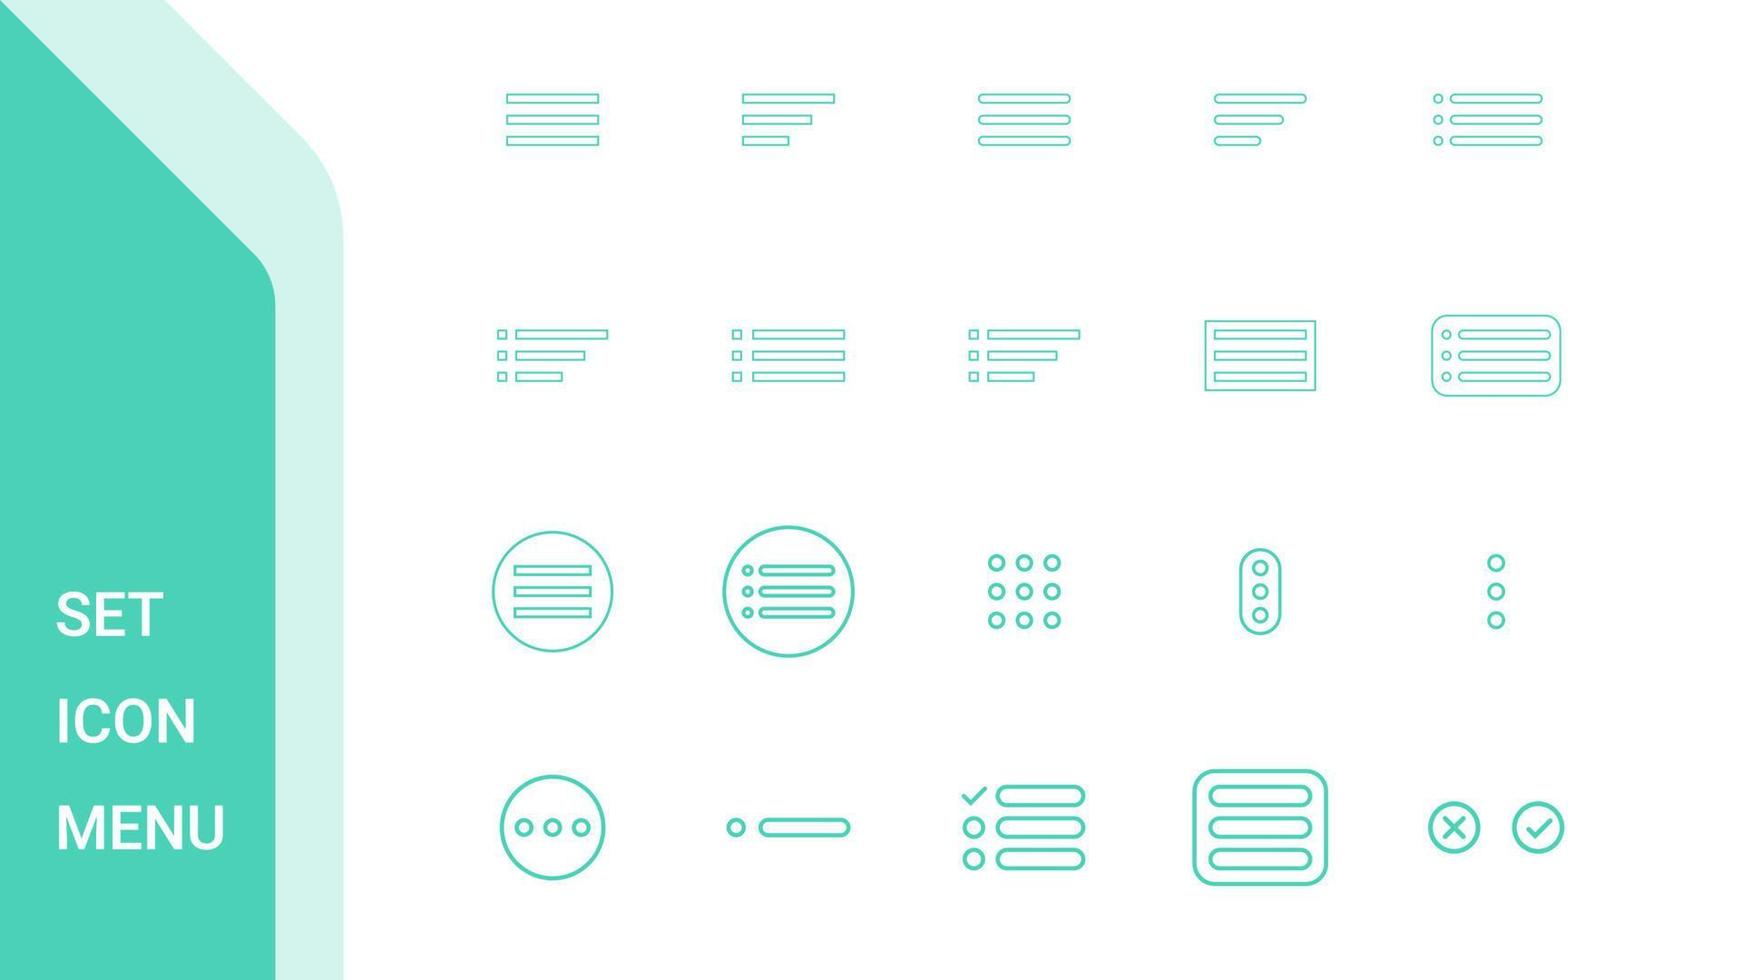 définir le menu d'icônes avec un design de ligne moderne. pack d'éléments de liste de sites Web. icônes de ligne de menu hamburger vecteur